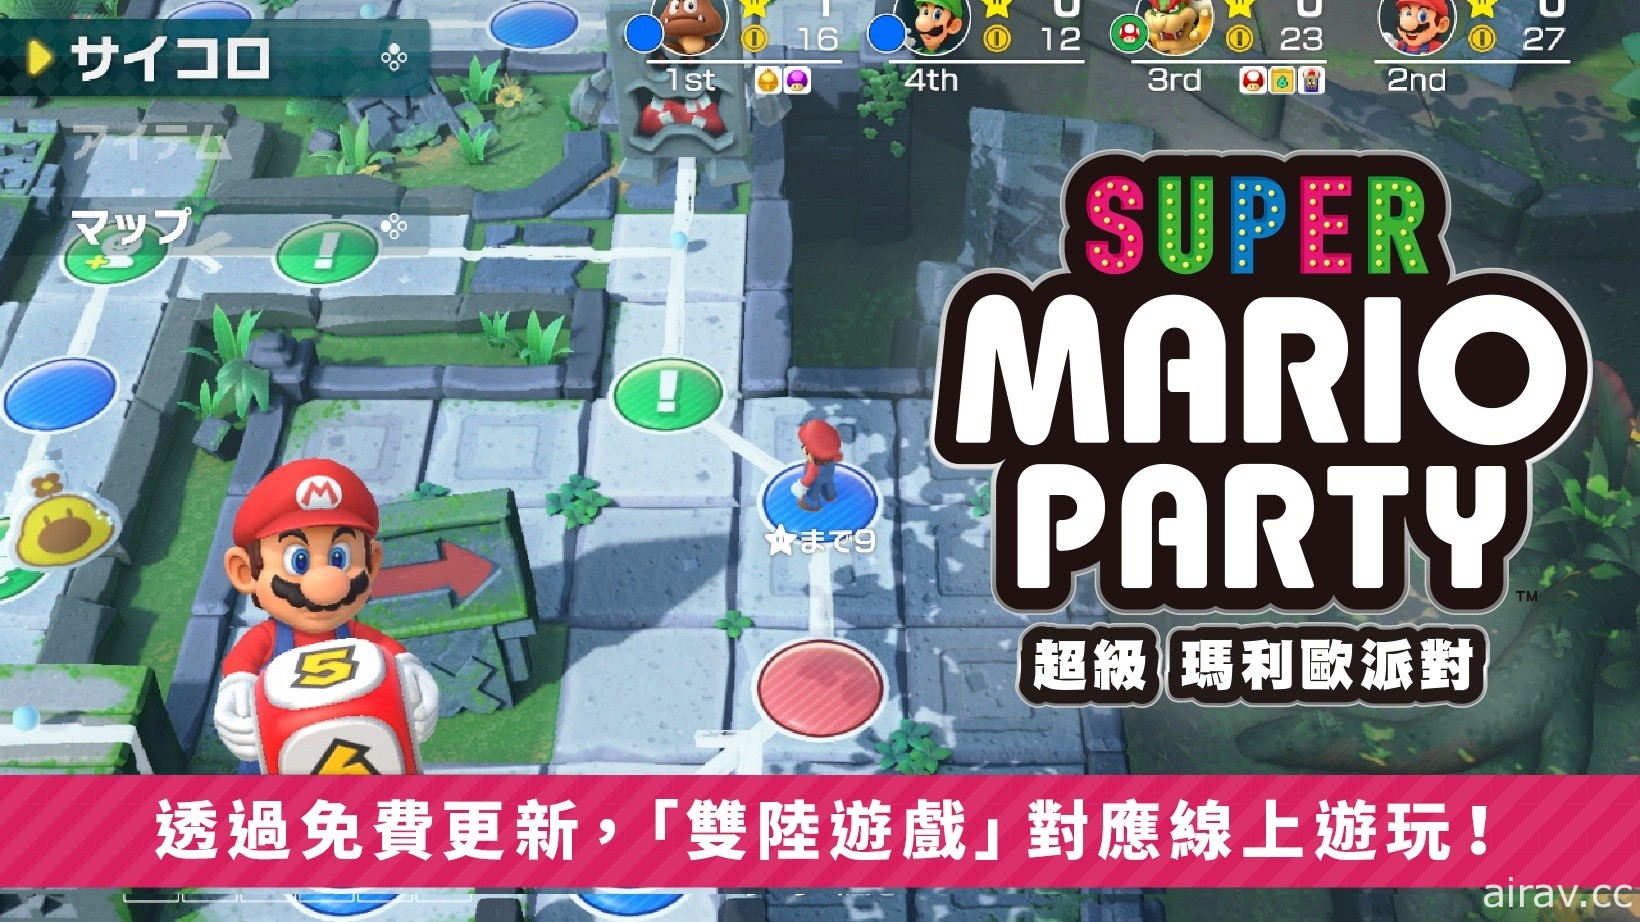 《超級瑪利歐派對》發布免費更新 「雙陸遊戲」「70 種小遊戲」追加支援線上遊玩